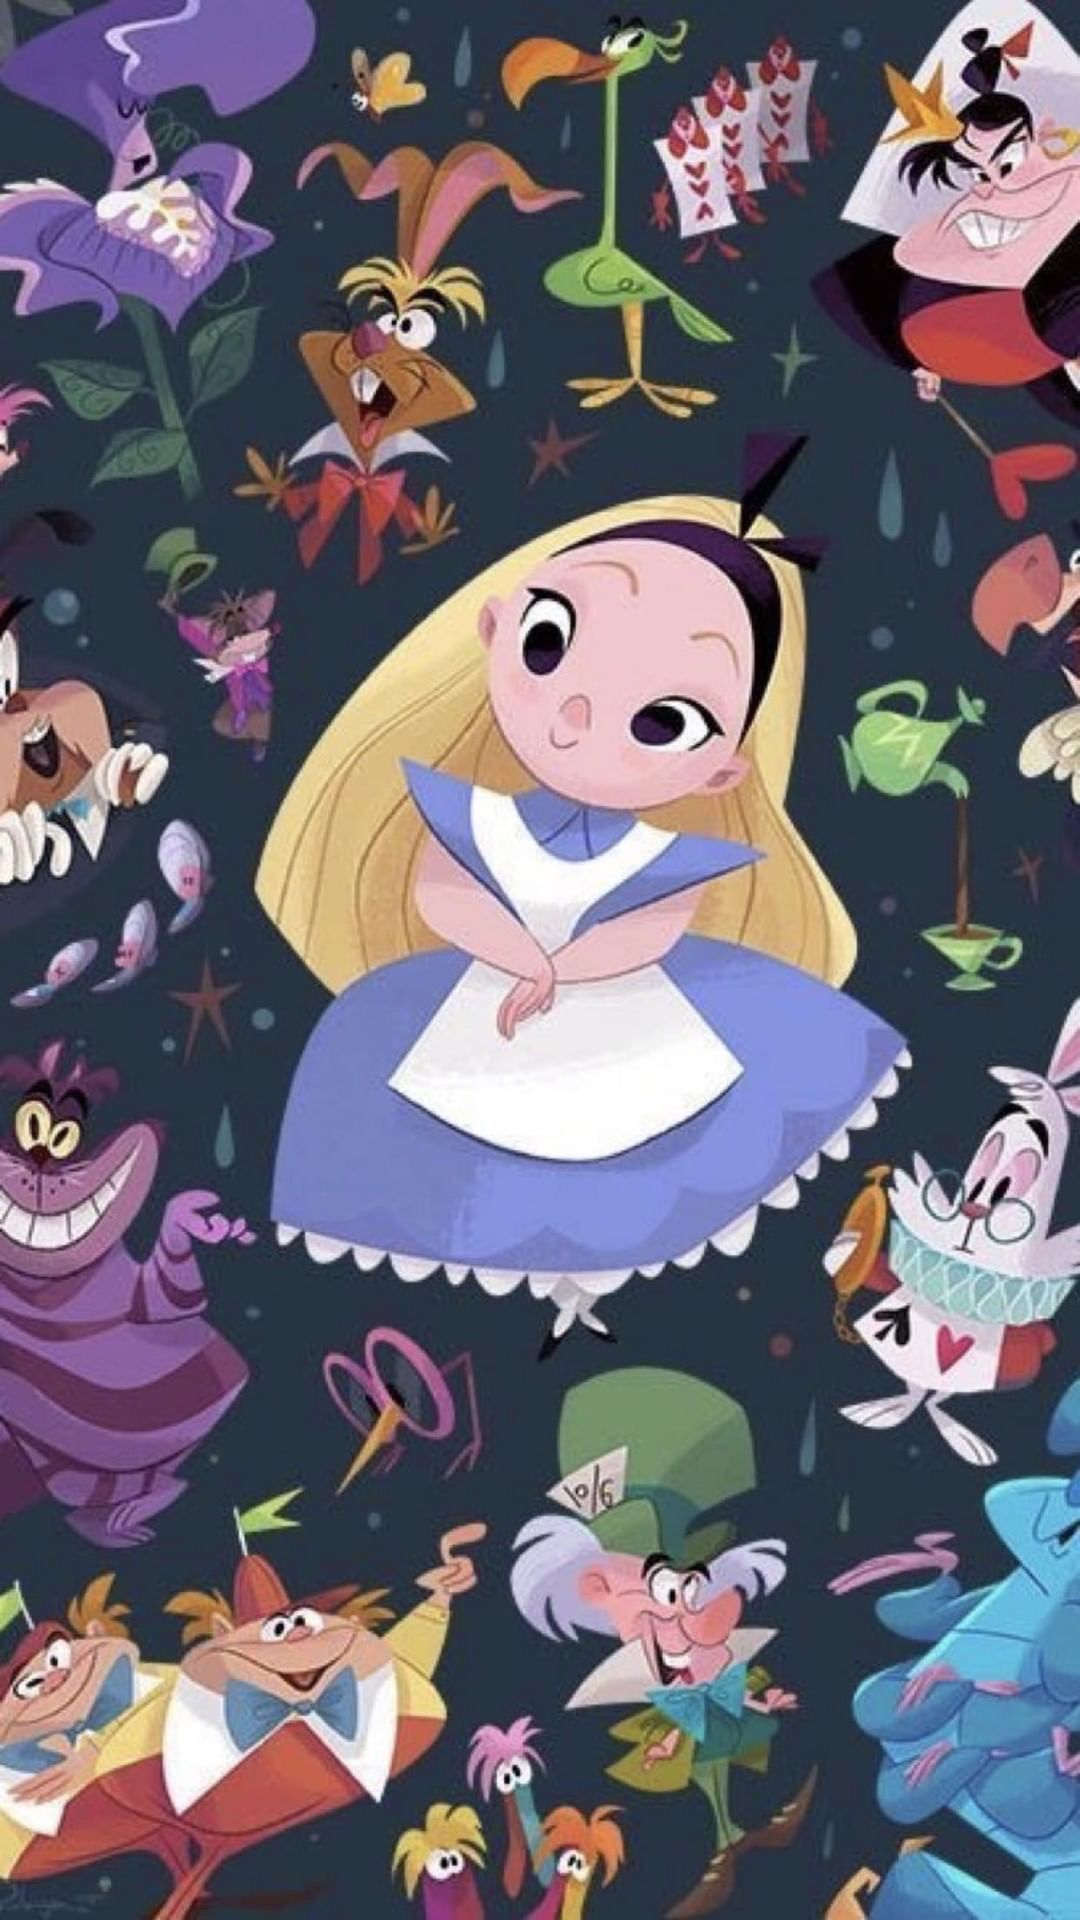  Alice Im Wunderland Hintergrundbild 1080x1920. Alice in wonderland. Disney wallpaper, Alice in wonderland, Disney art